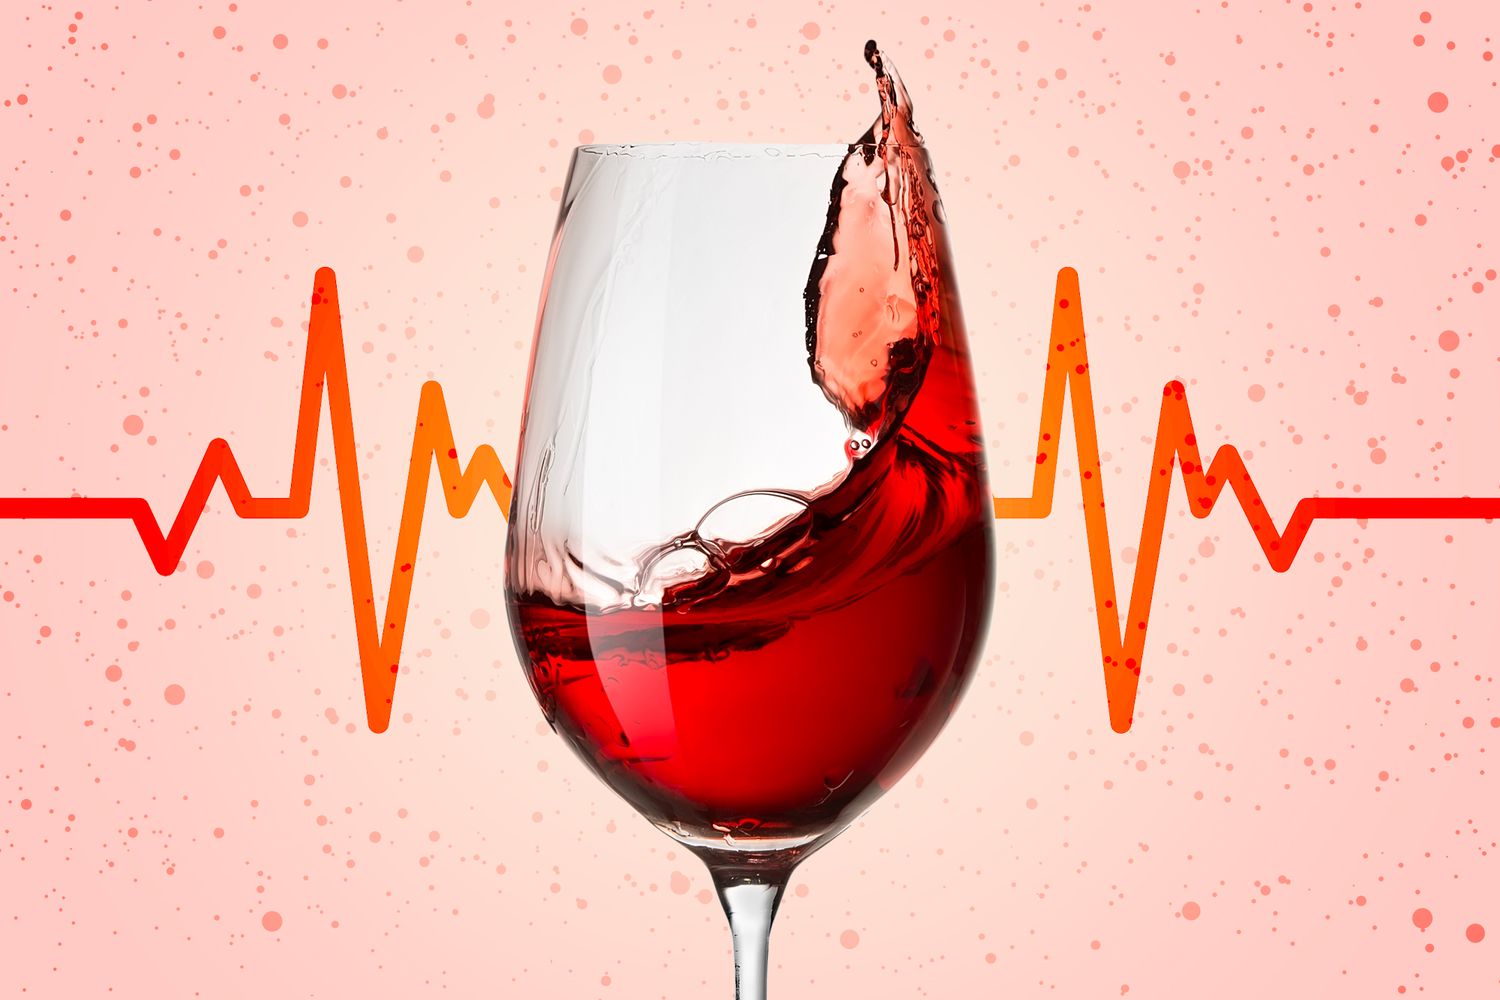 Collage de copas de vino con un gráfico cardíaco en el fondo